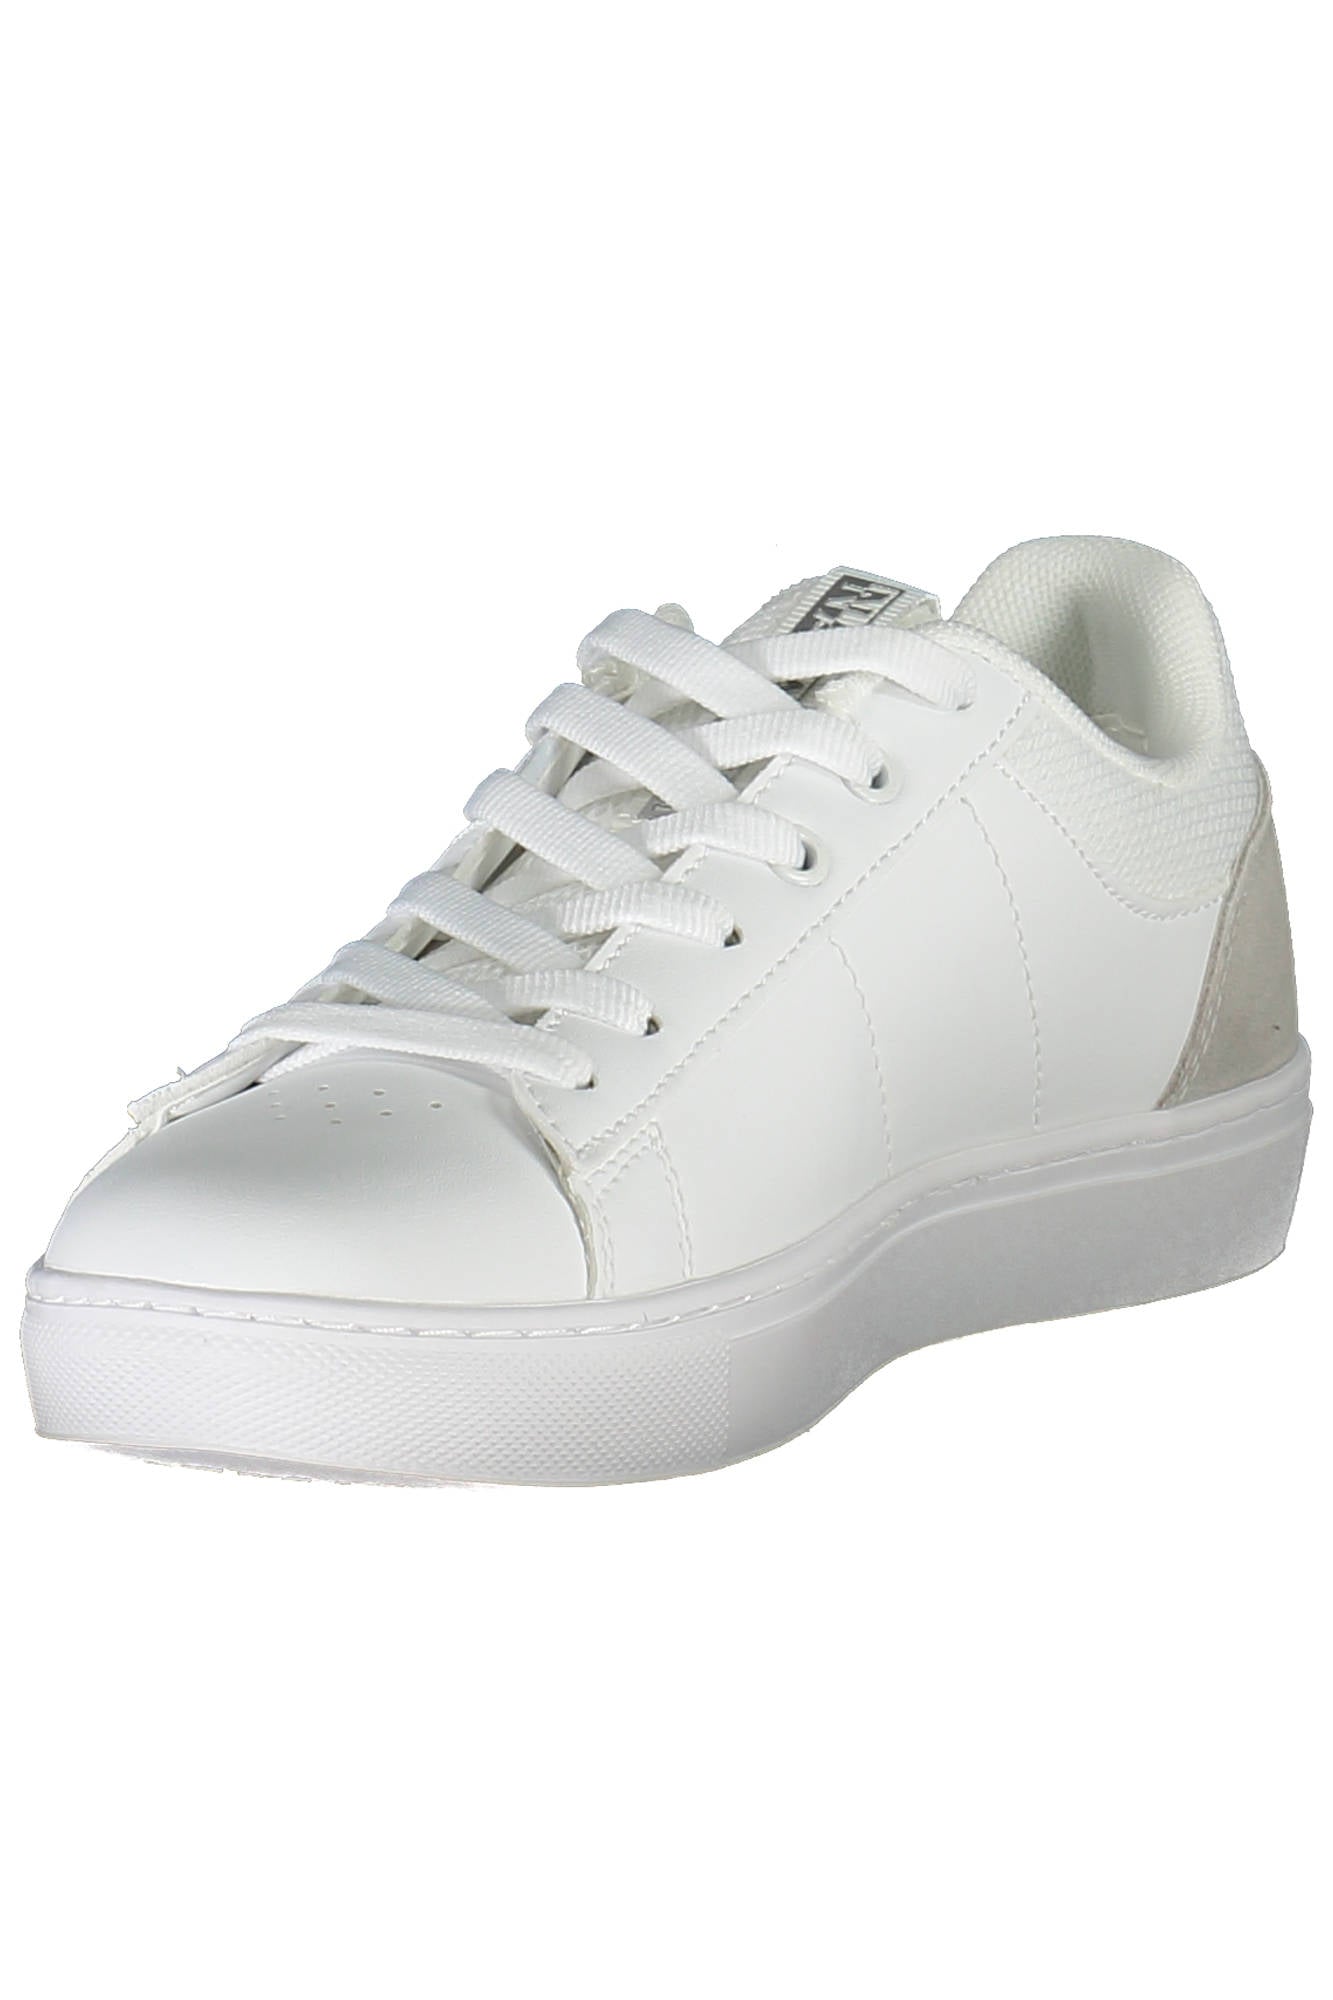 Napapijri White Sneakers - Fizigo